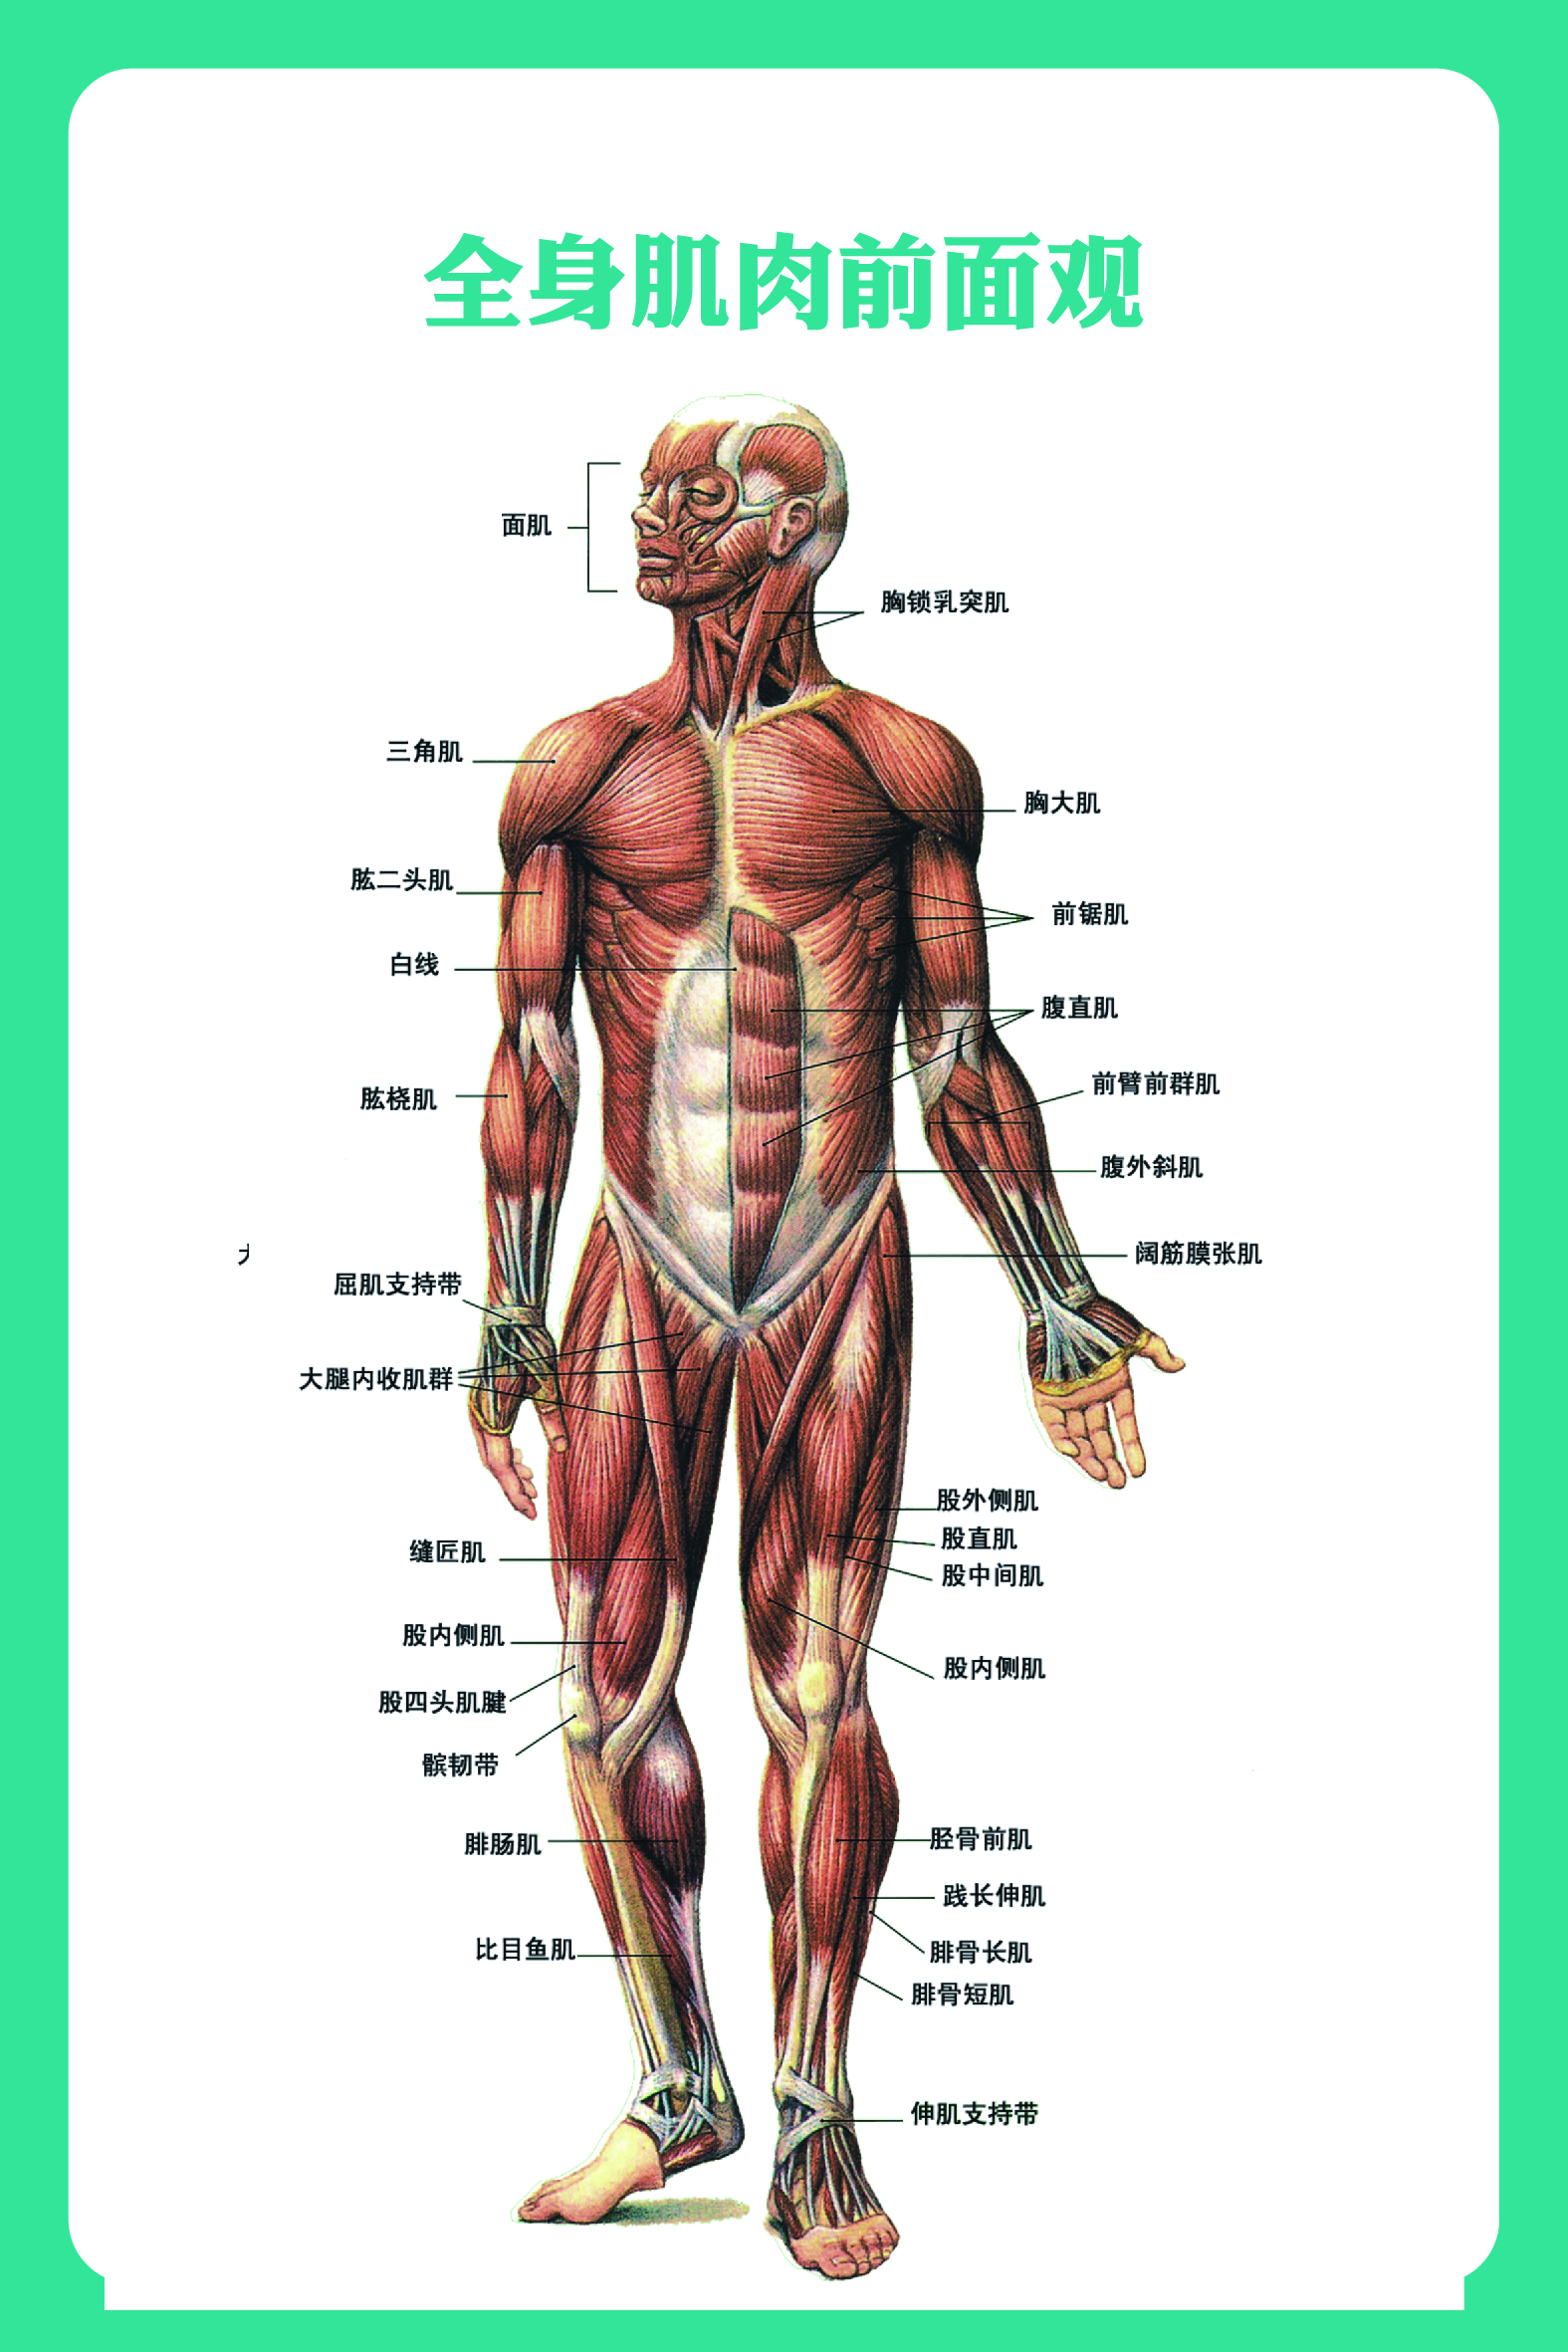 人体解剖学图集ios图片